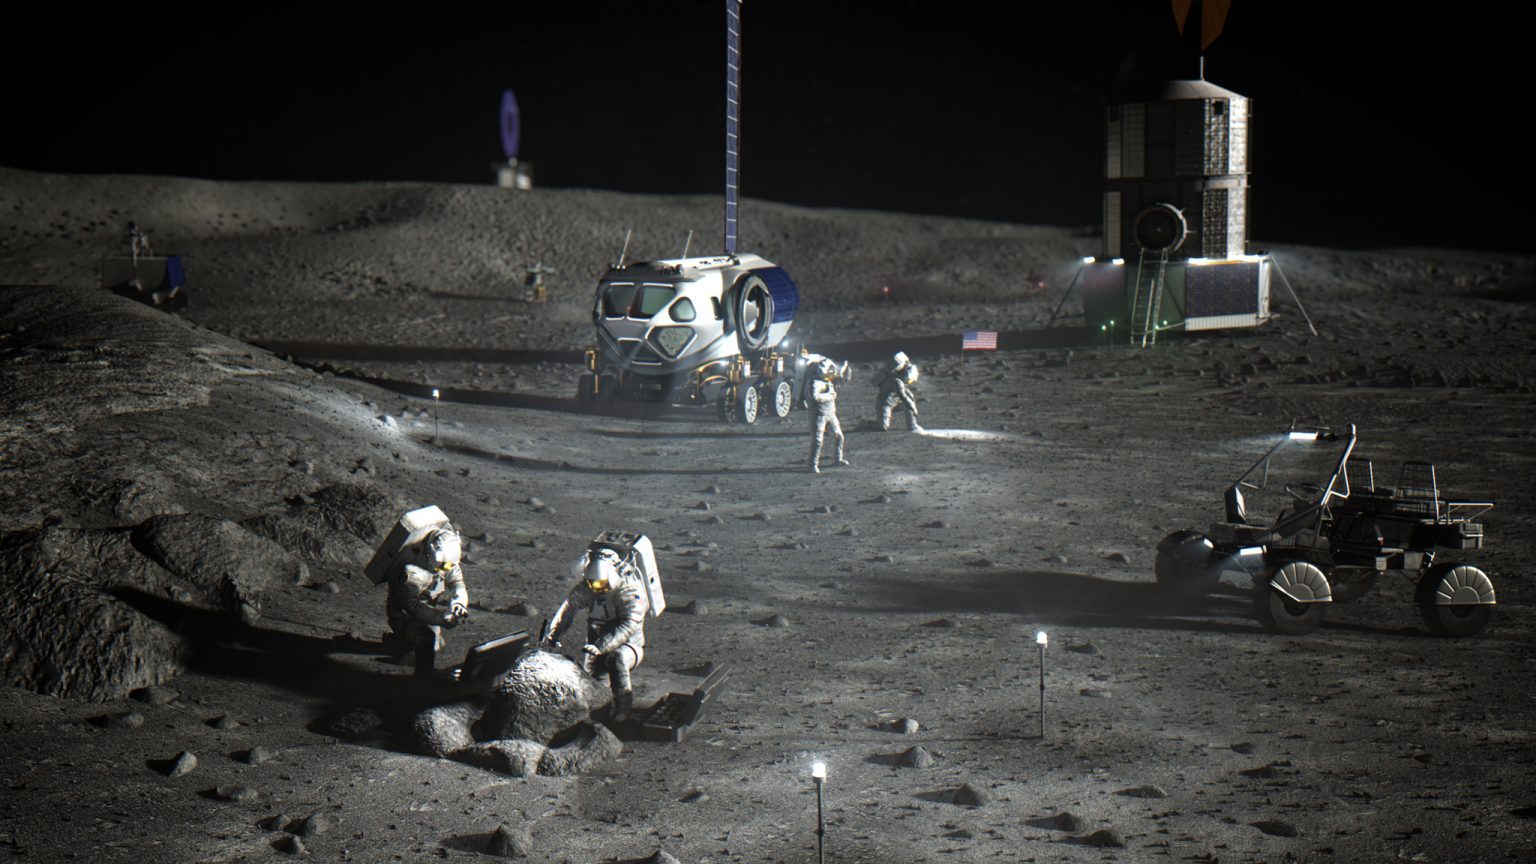 تصوير فني لرواد فضاء ناسا في القطب الجنوبي للقمر وهم يقومون بأعمال مبكرة لإنشاء معسكر قاعدة أرتميس.